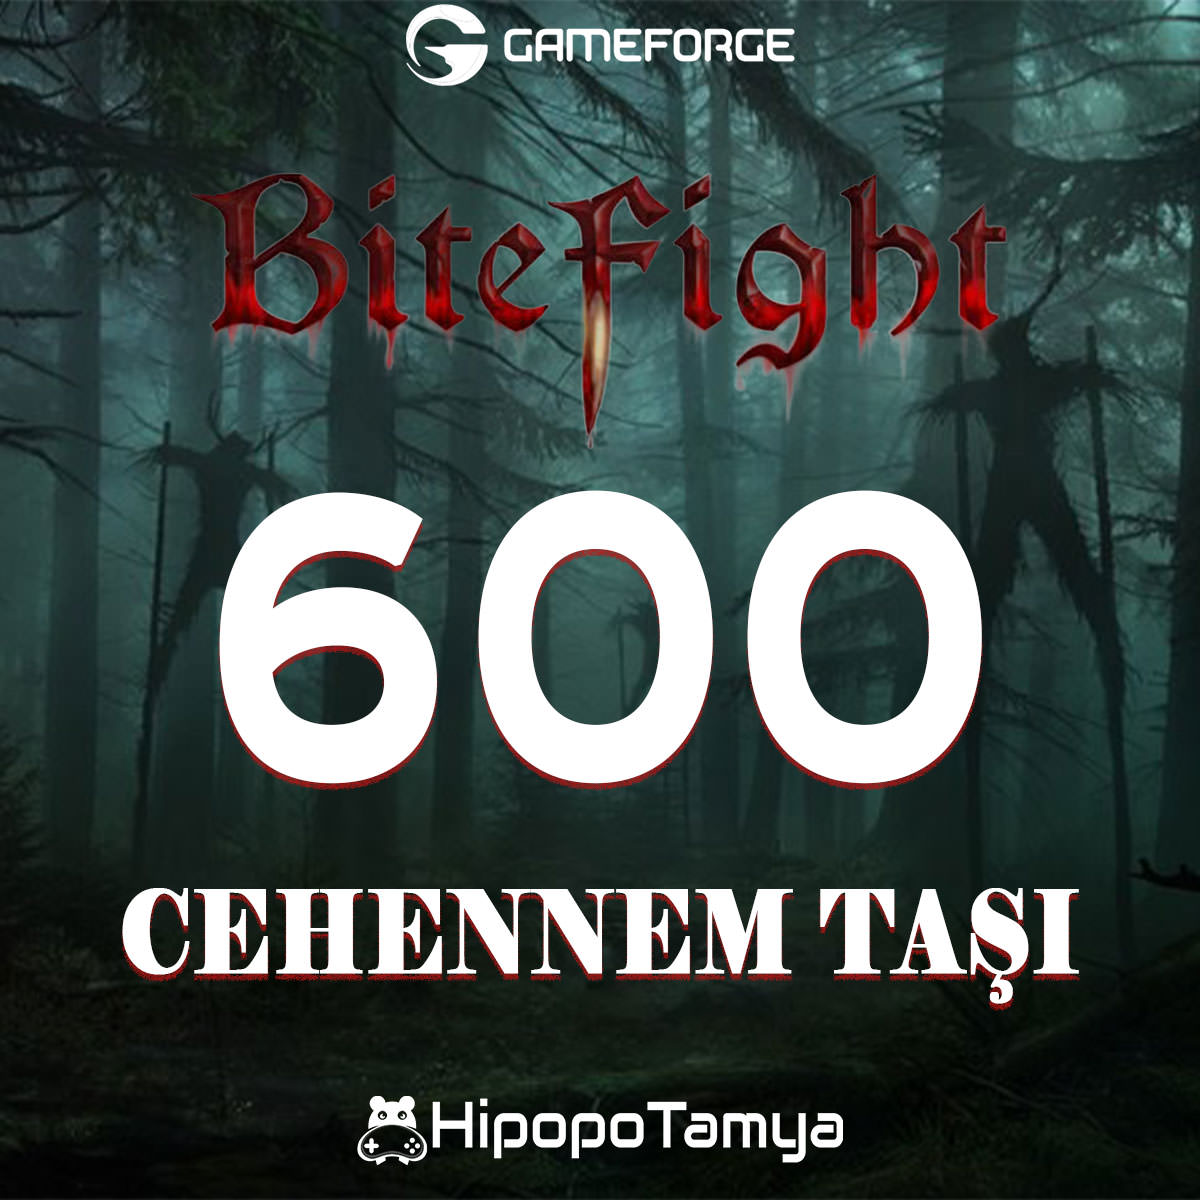 Bitefight 600 Cehennem Taşı